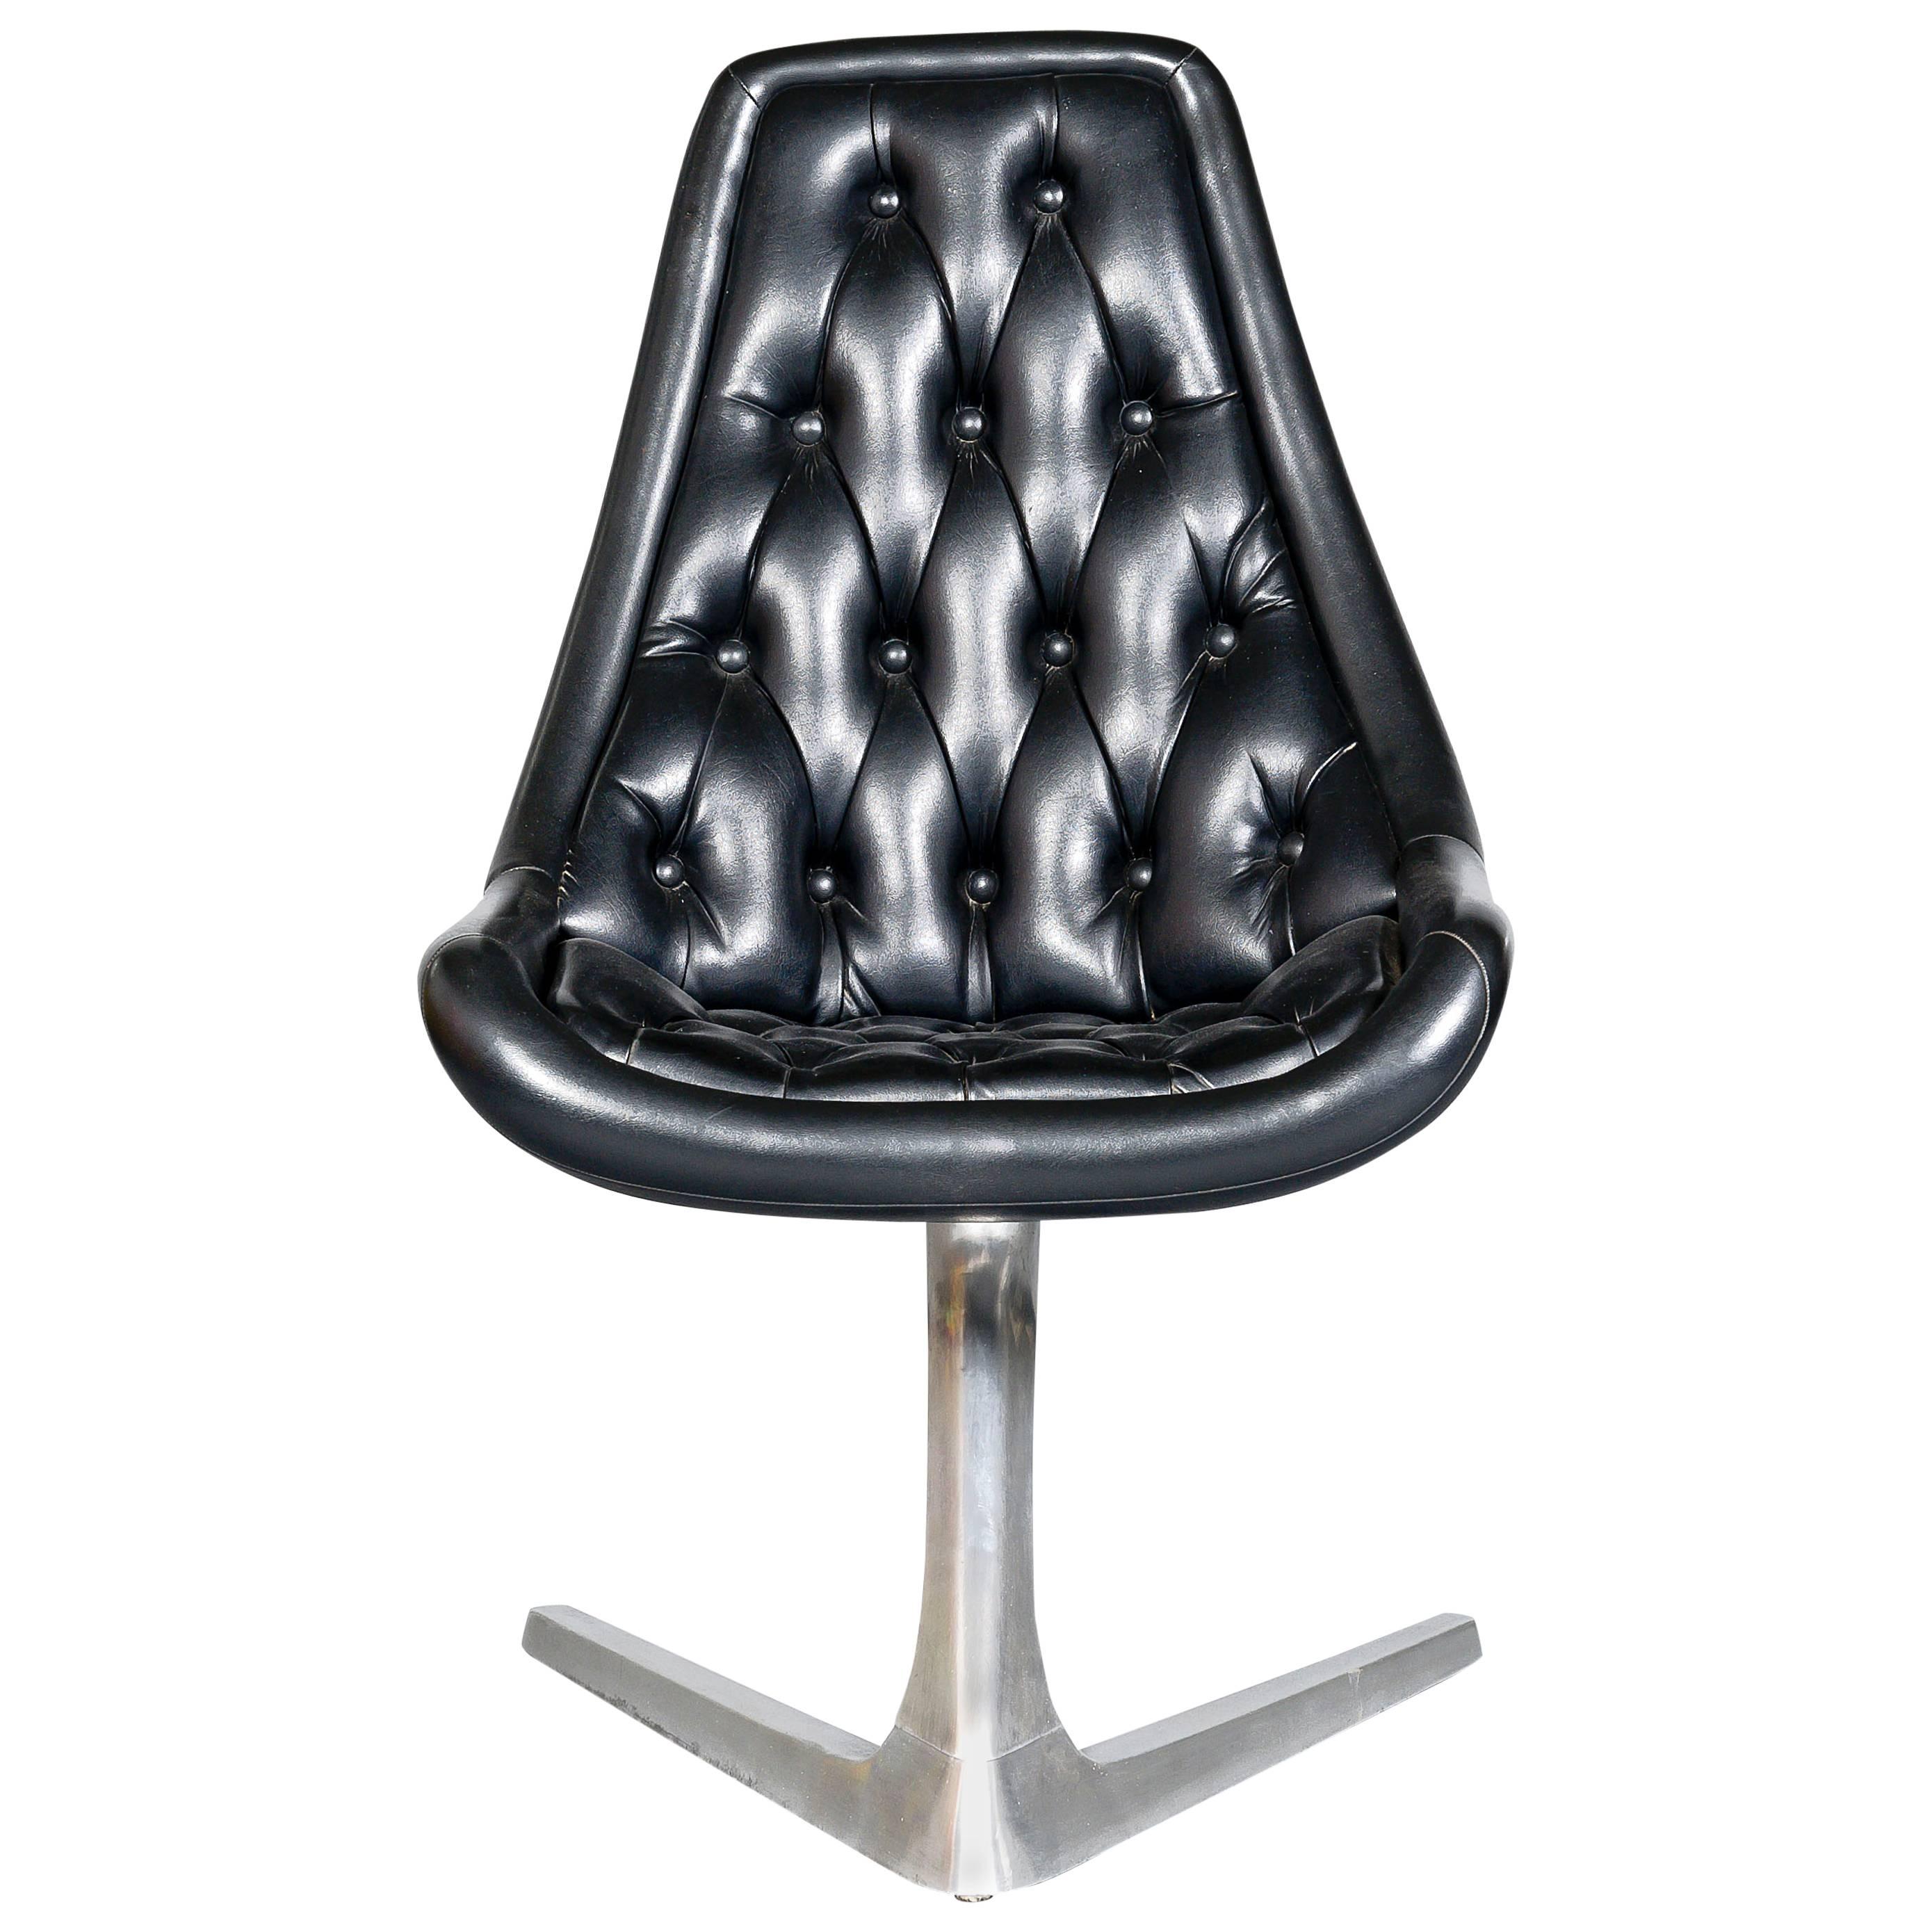 Aluminium Chromcraft 'Sculpta' Stuhl aus den 1960er Jahren, neu gepolstert mit schwarzem Leder im Angebot